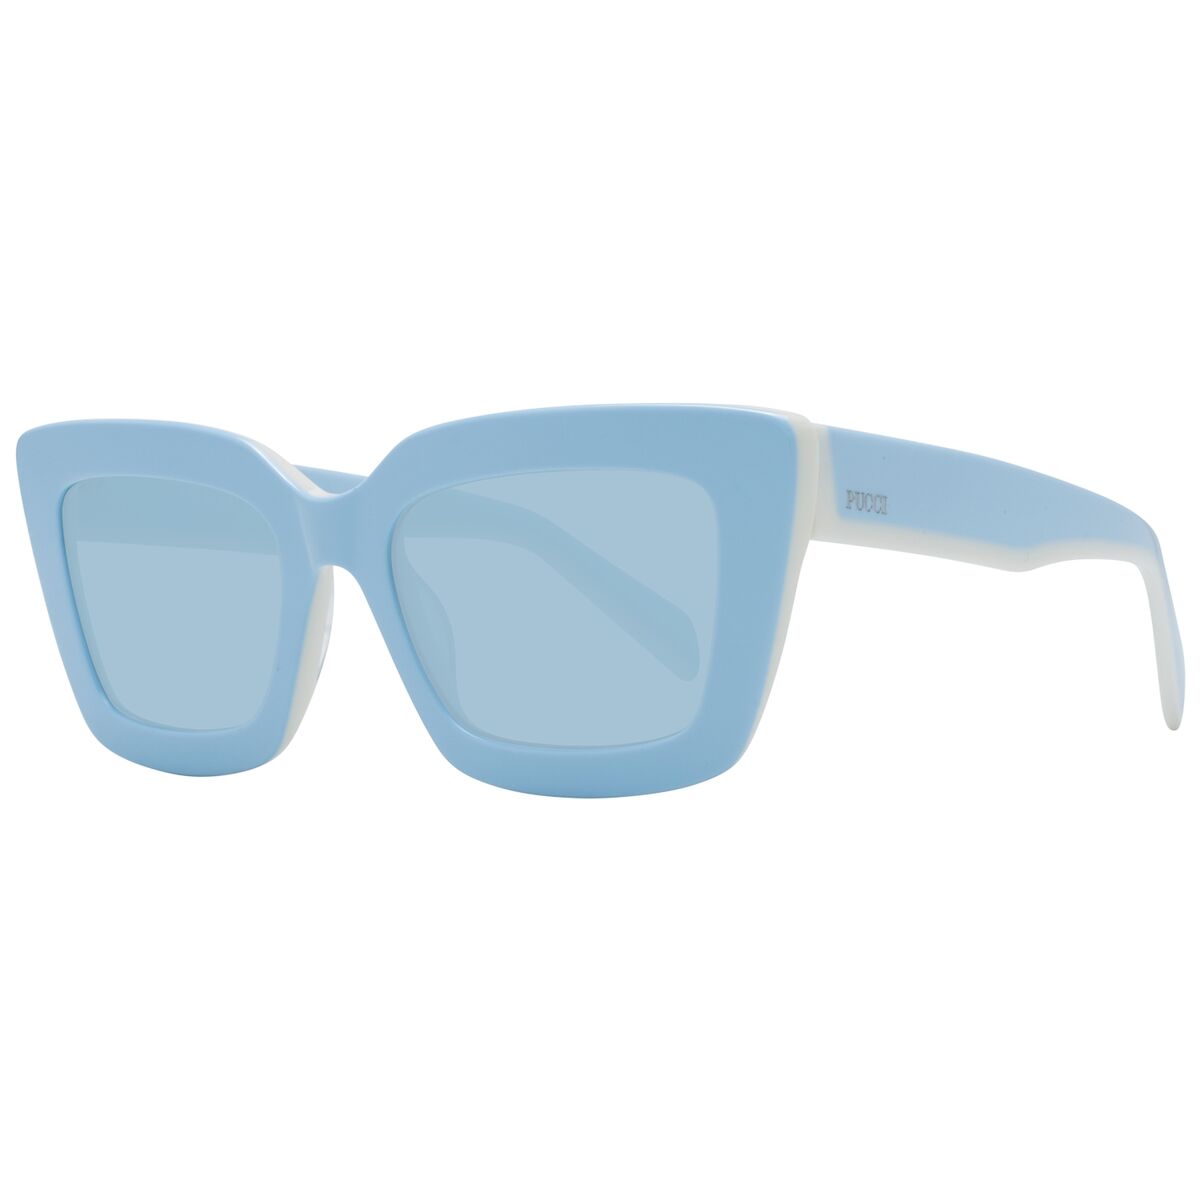 Ladies' Sunglasses Emilio Pucci EP0202 5484V